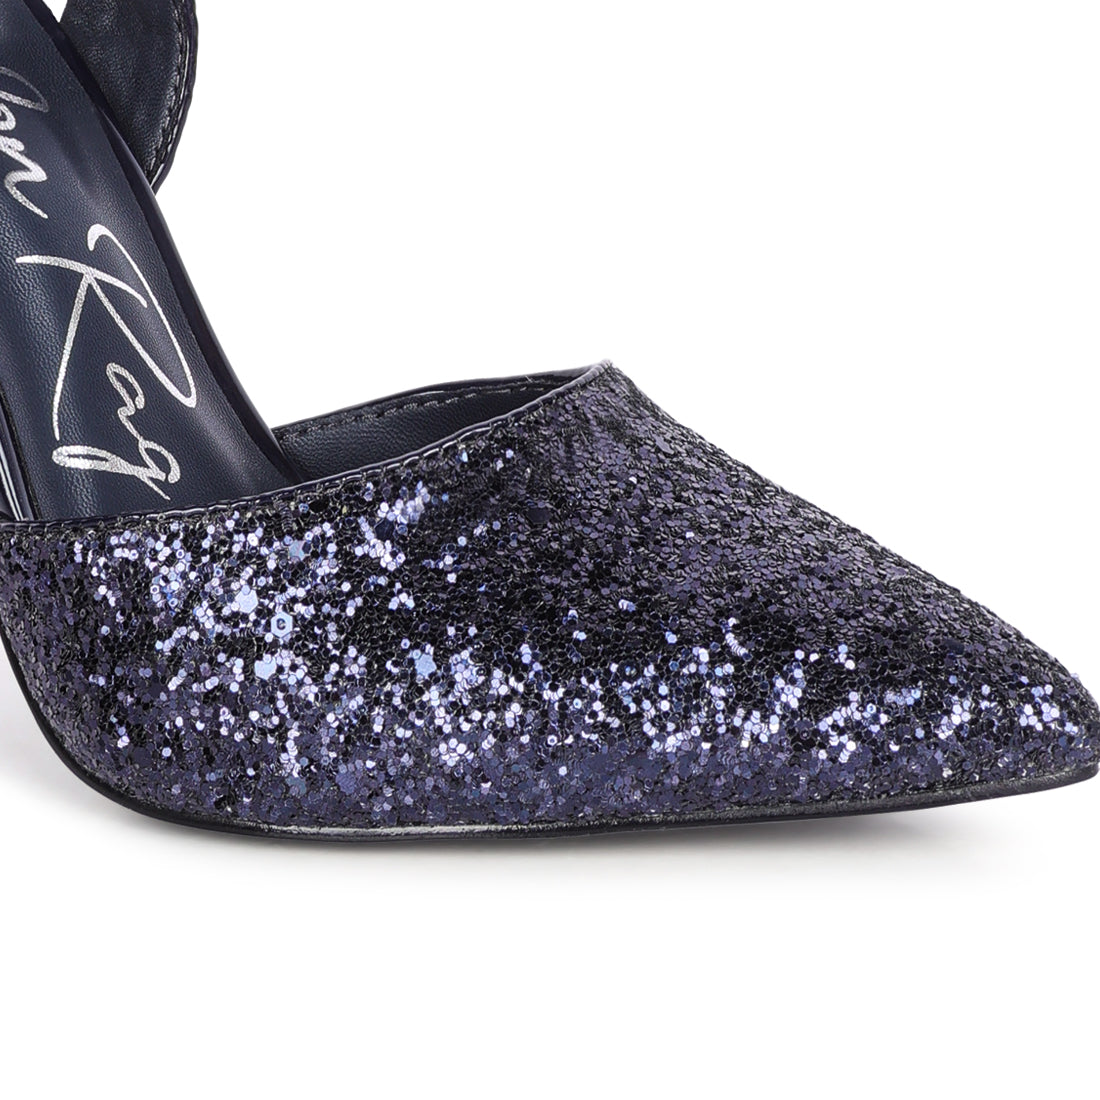 Cloriss High Heeled Glitter Sandals